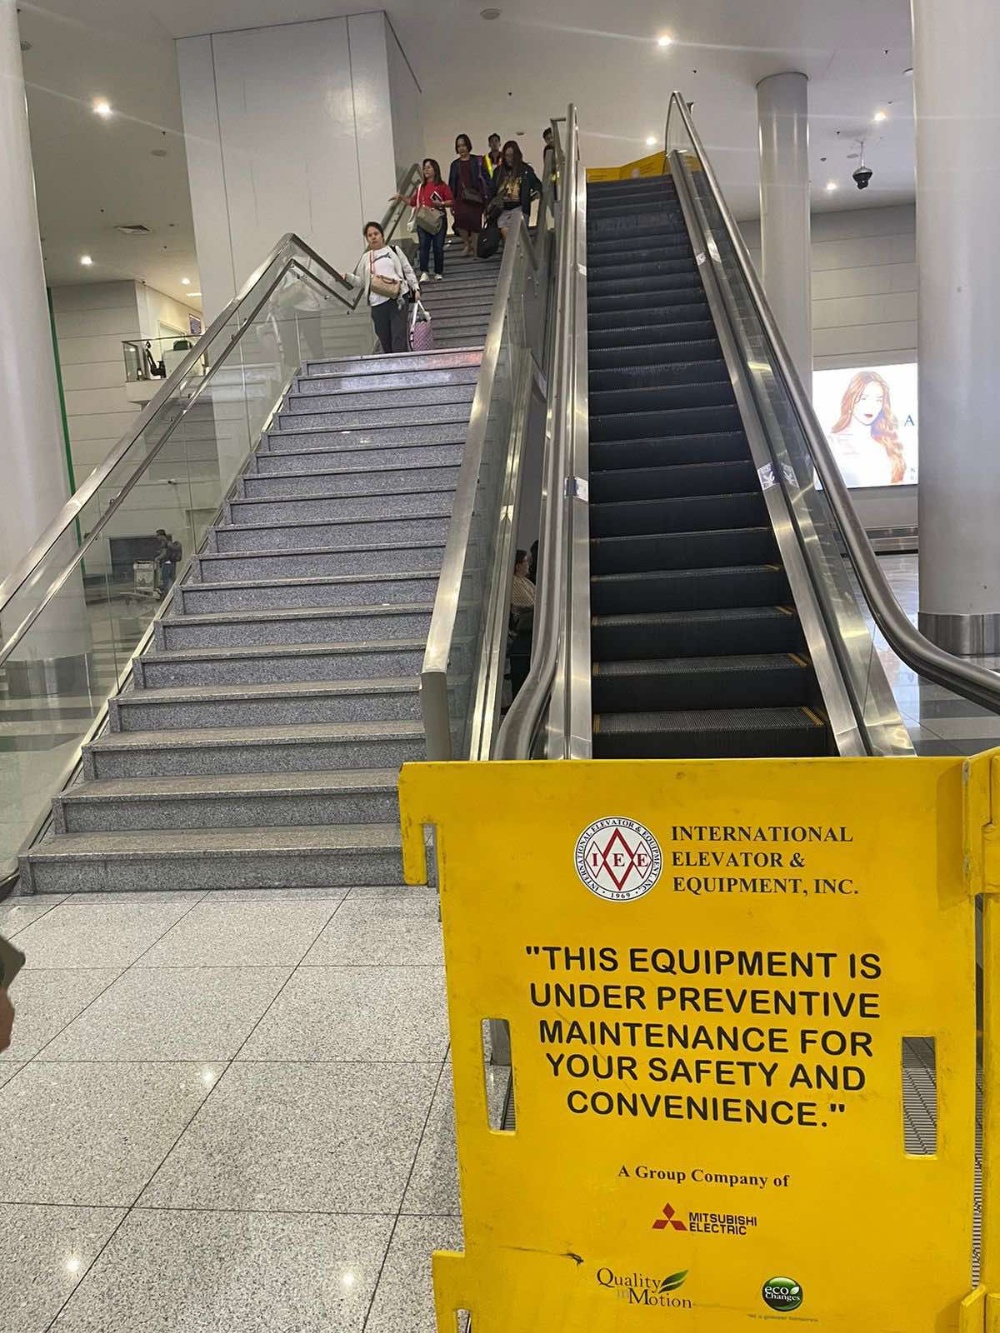 NAIA机场手扶梯坏了两个月还没好 参议长:交给SM一天就修好